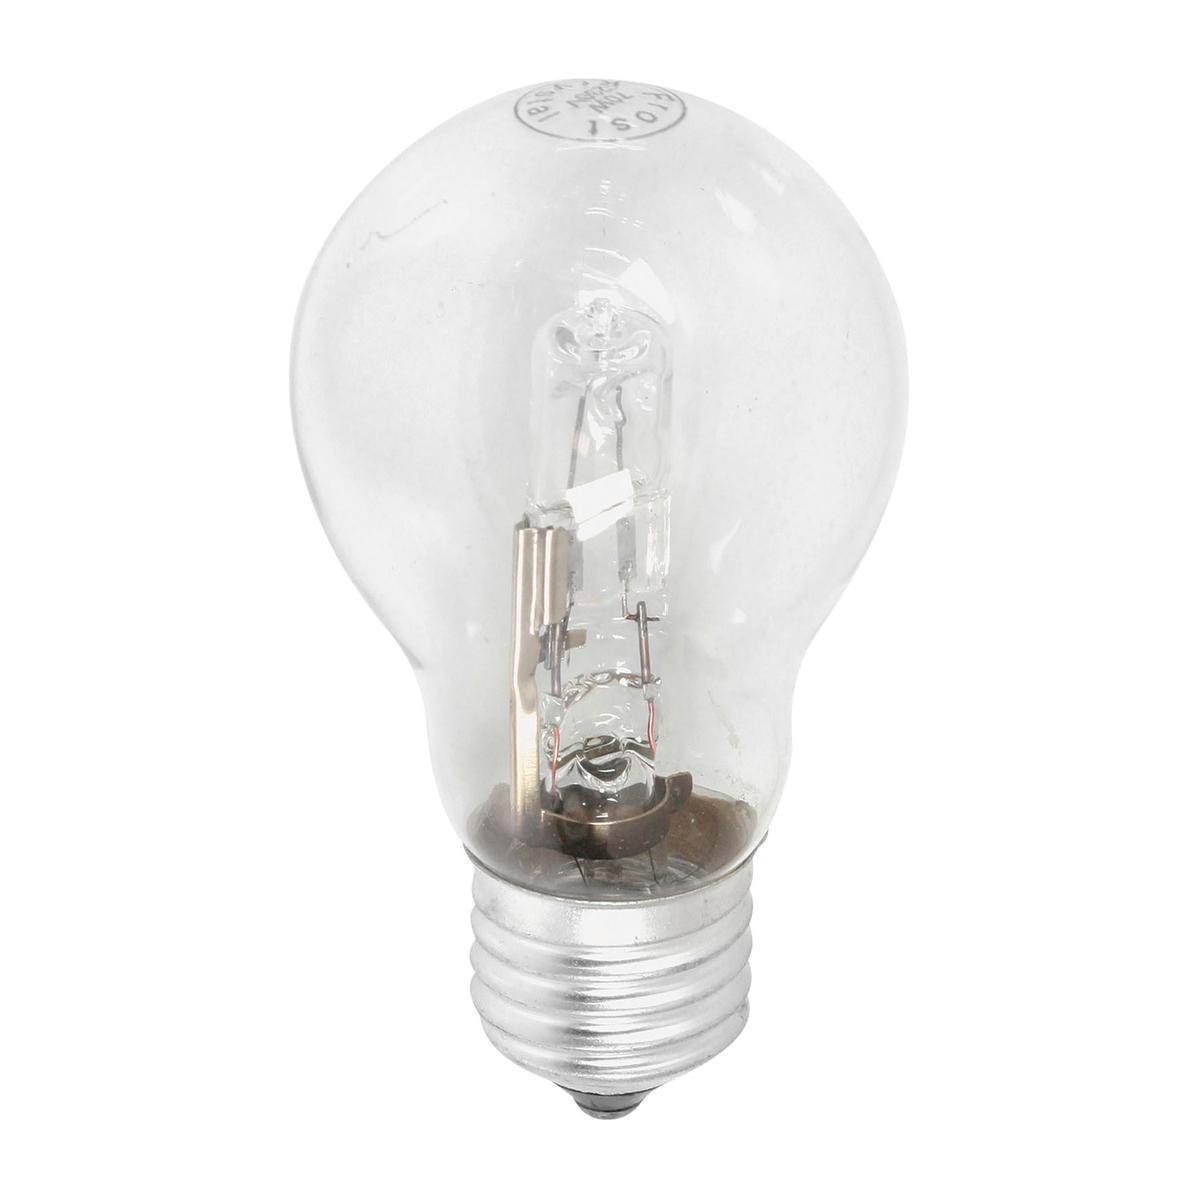 Ampoule halogène standard E27 - 12 x 3.5 x 15 cm - Transparent